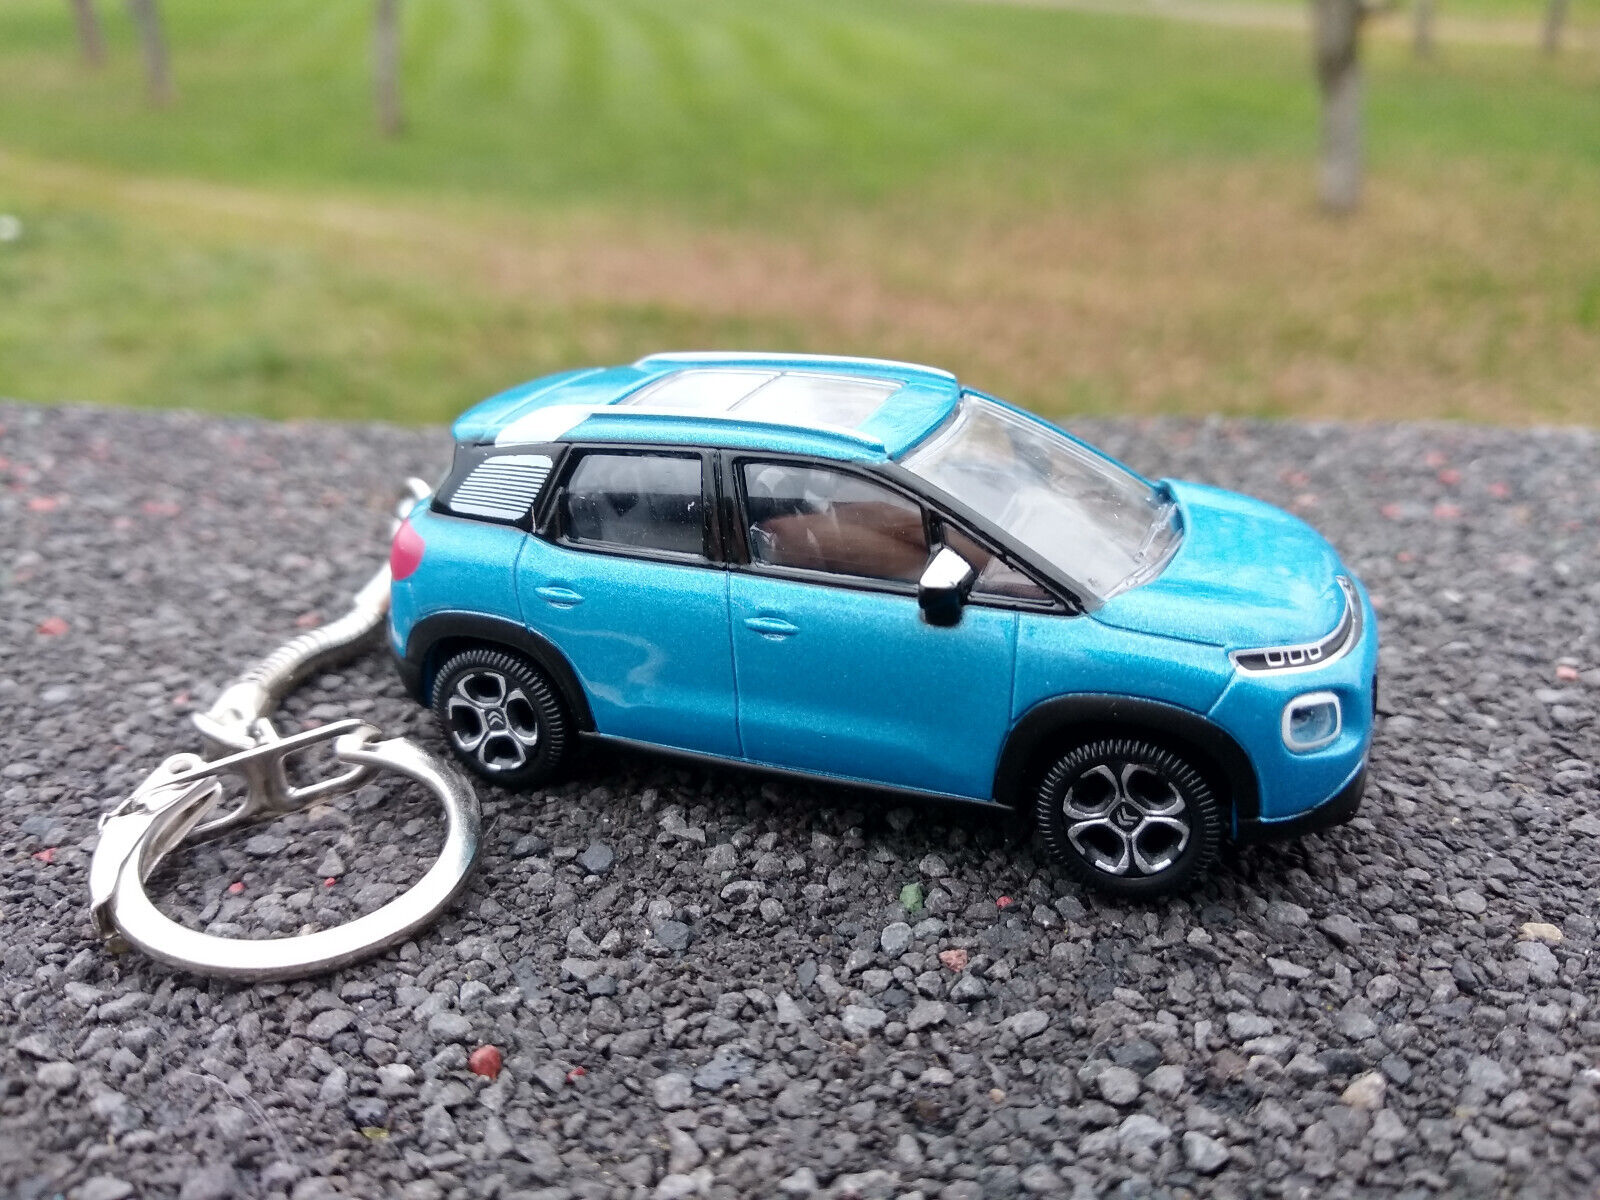 Porte clé Citroën C3 Aircross 2017 bleu, en métal, idée cadeau